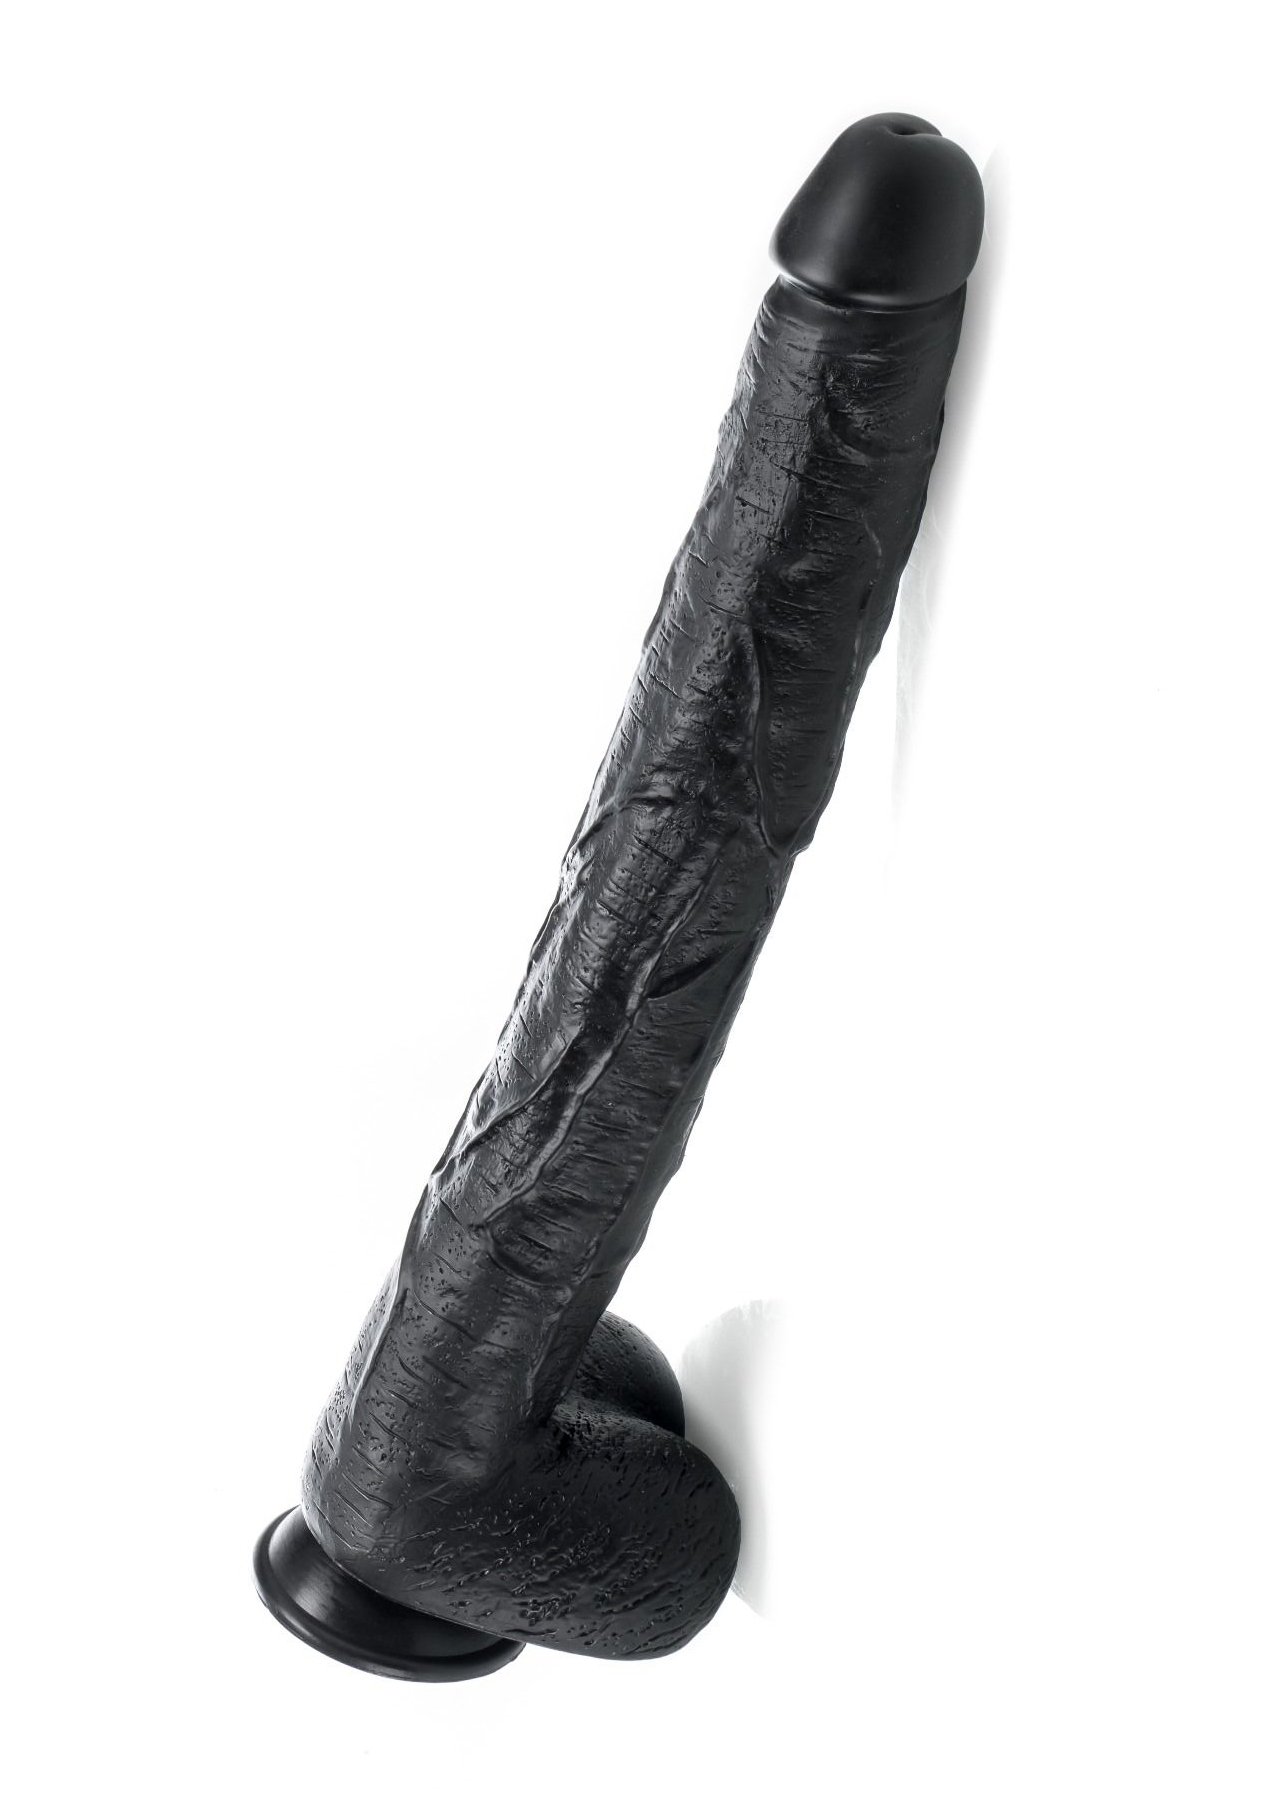 Tom's Dick - Dildo black (43 x 5,8 cm)